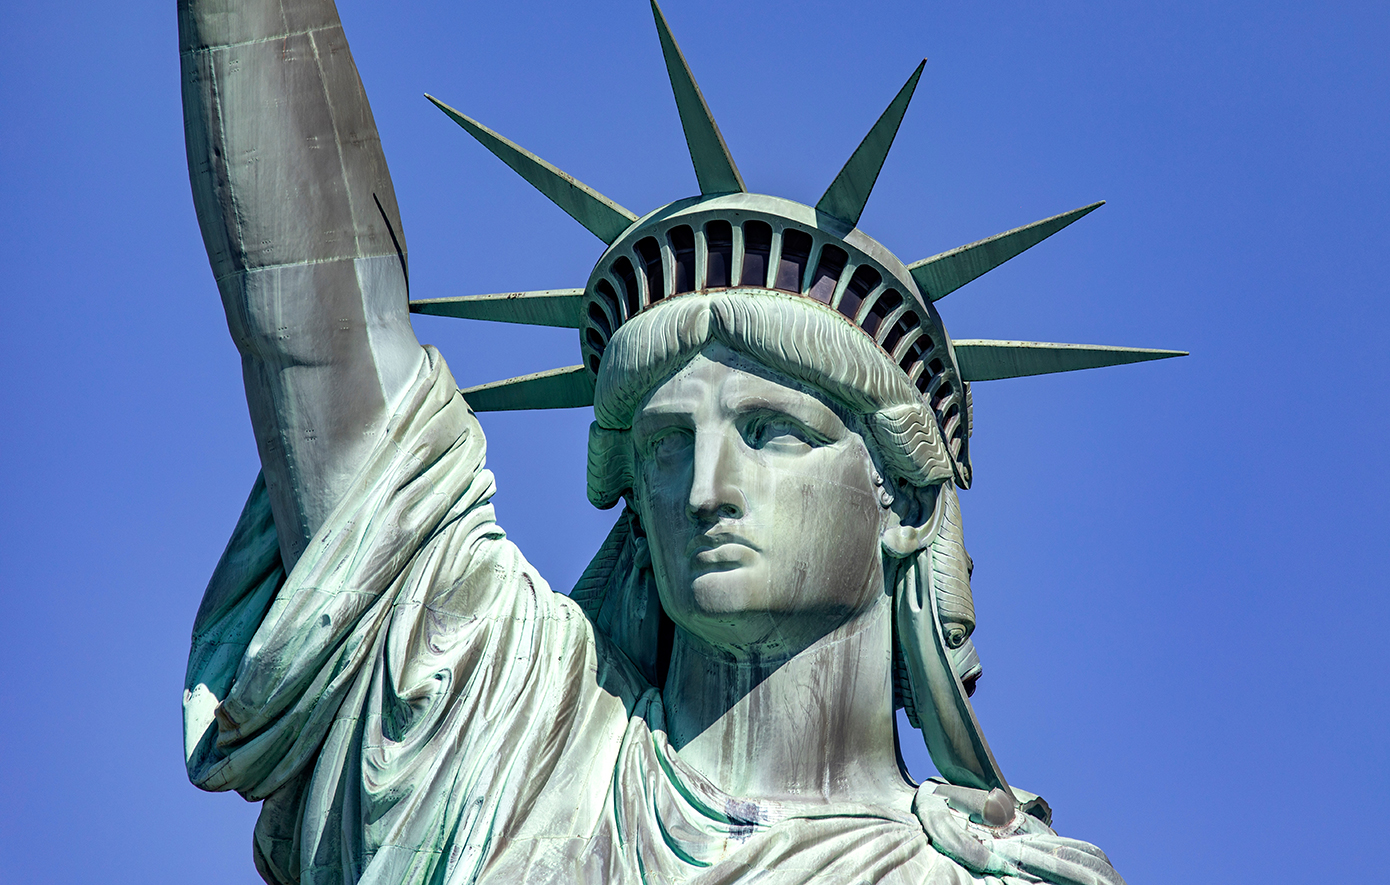 Πέντε πράγματα που ίσως δεν γνωρίζετε για το Άγαλμα της Ελευθερίας